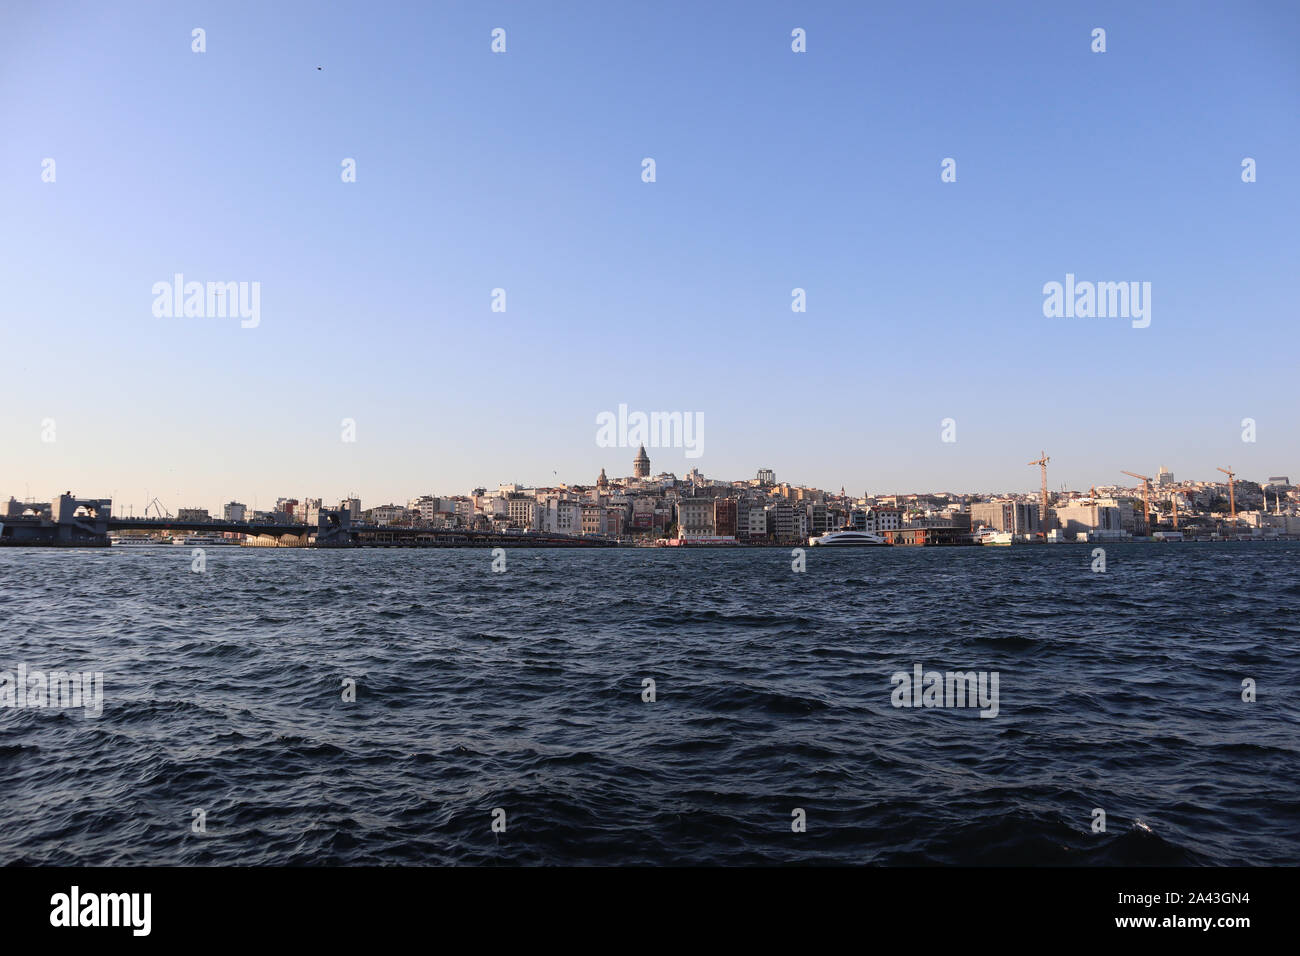 Istanbul, Fatih Eminonu / Turchia - 14 Settembre 2019: la bella e antica città di Kadikoy e Torre Galata nel retro. Foto Stock